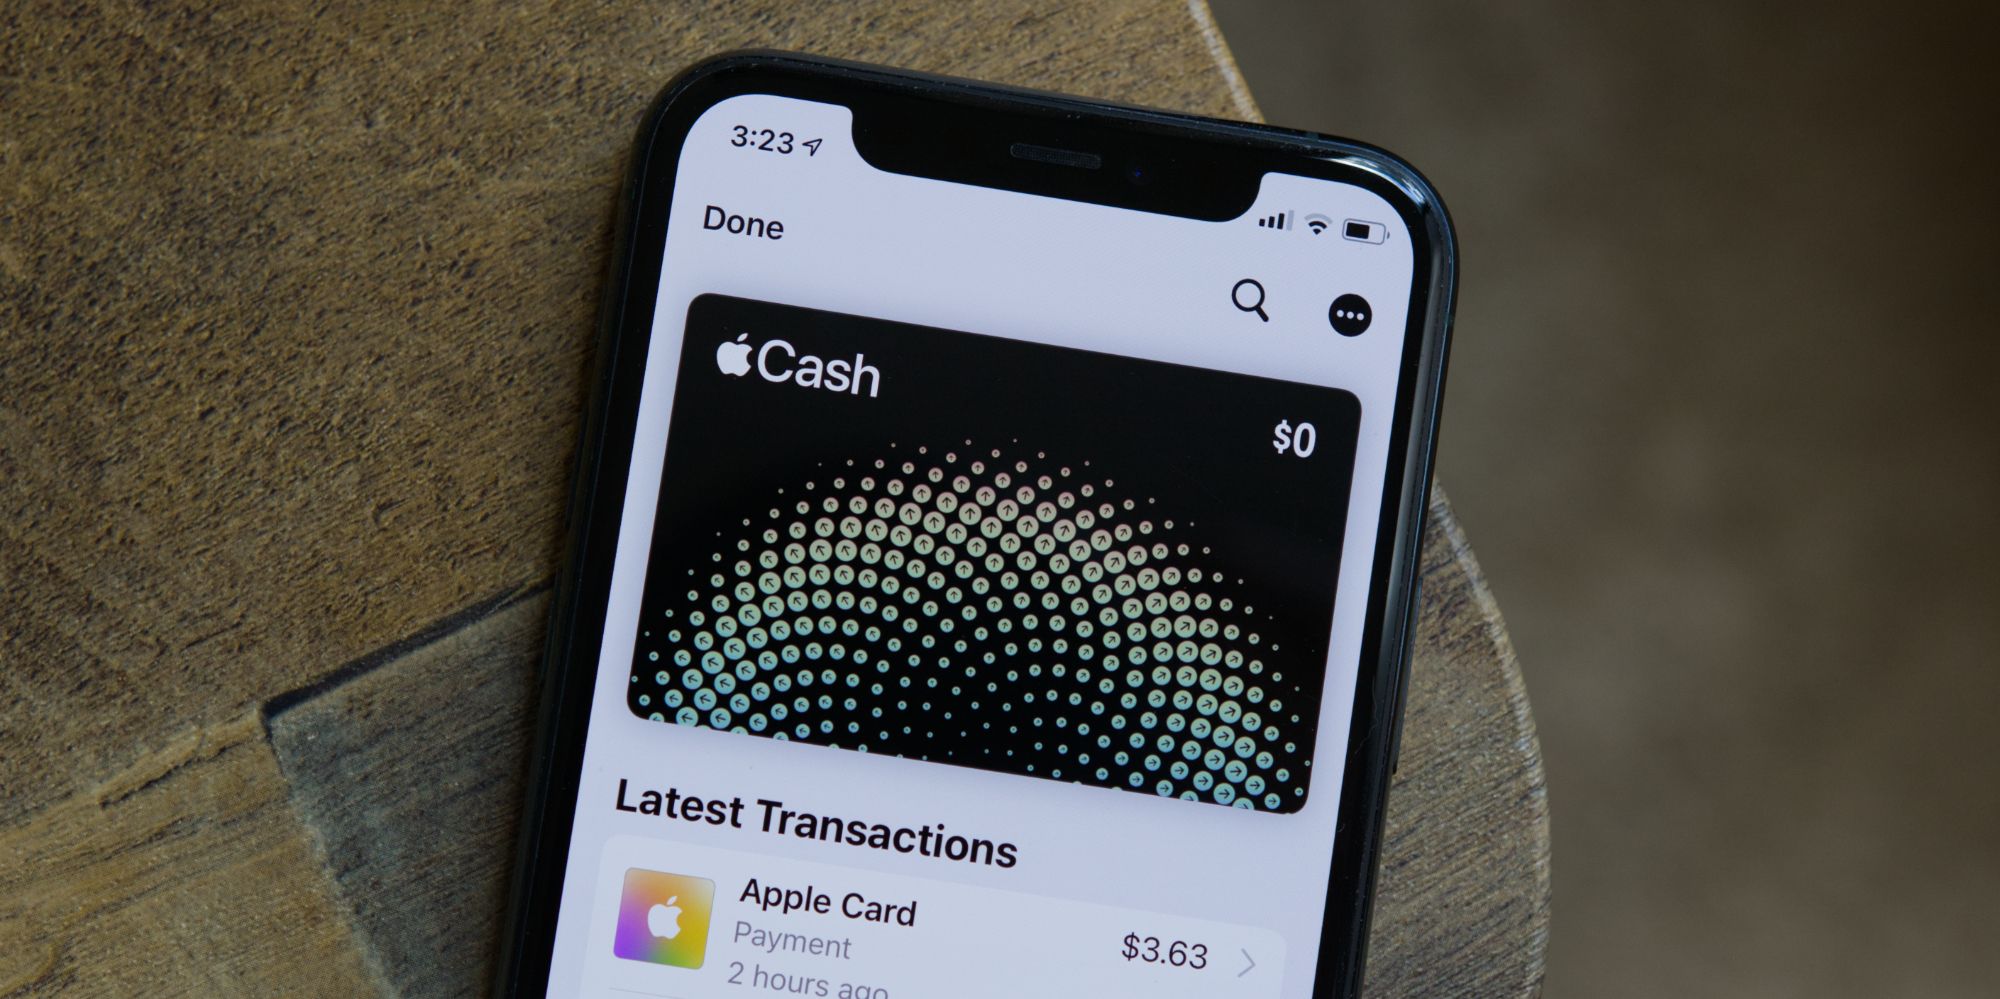 Apple Cash card in the Apple Wallet app